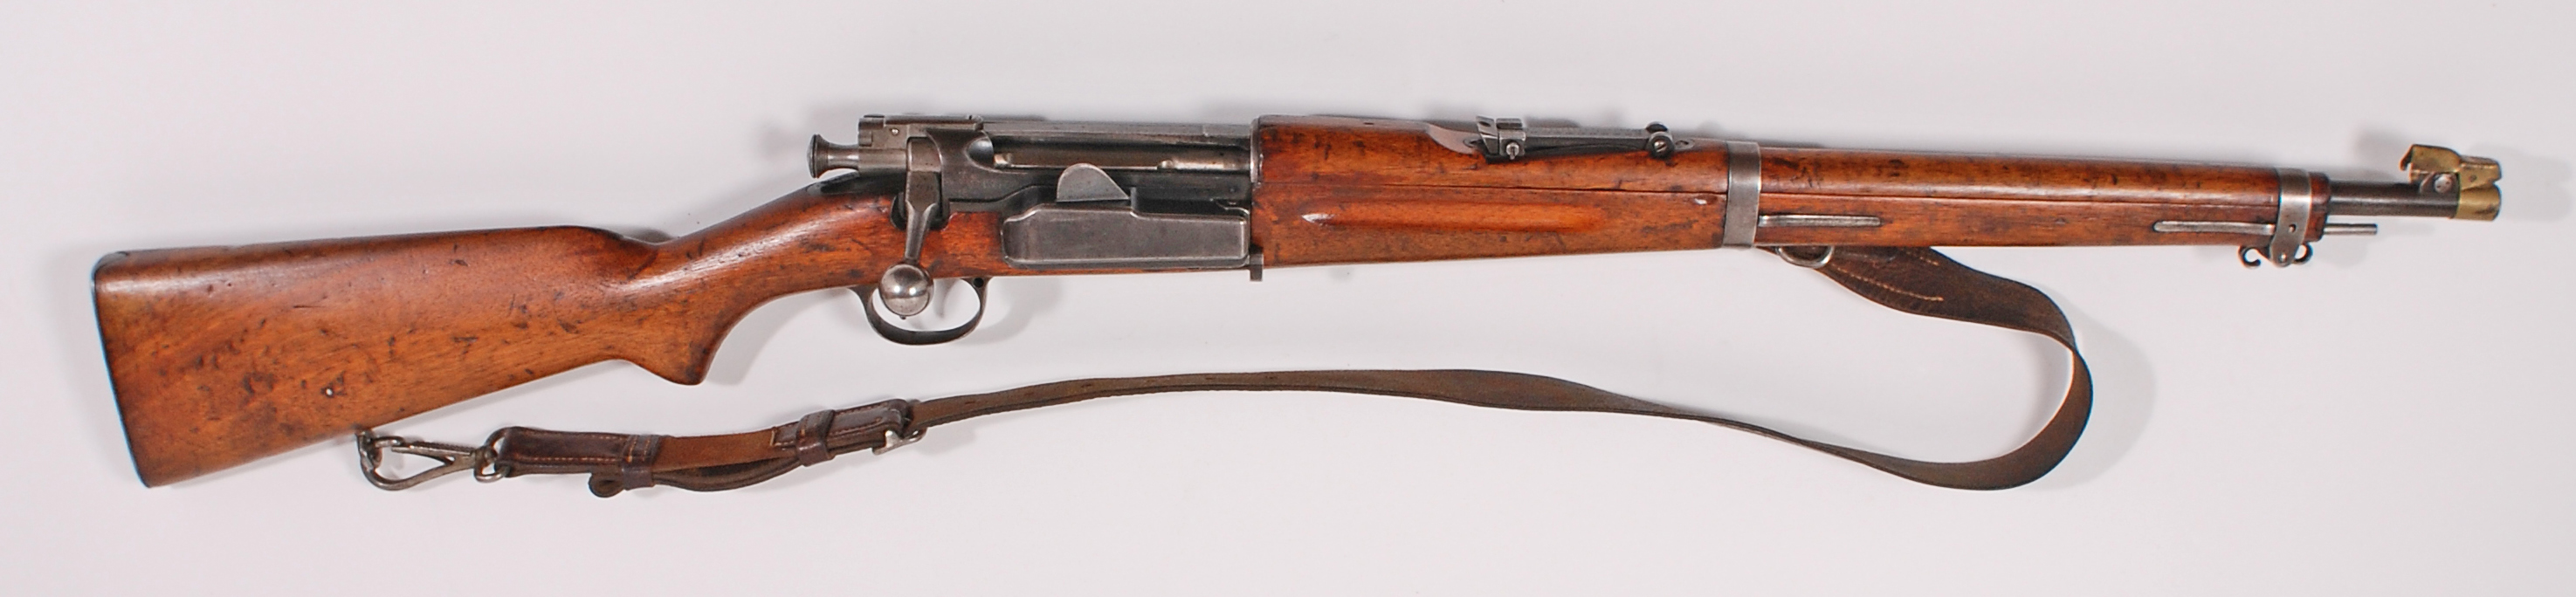 ./guns/rifle/bilder/Rifle-Kongsberg-Krag-M1907-11036-1.jpg